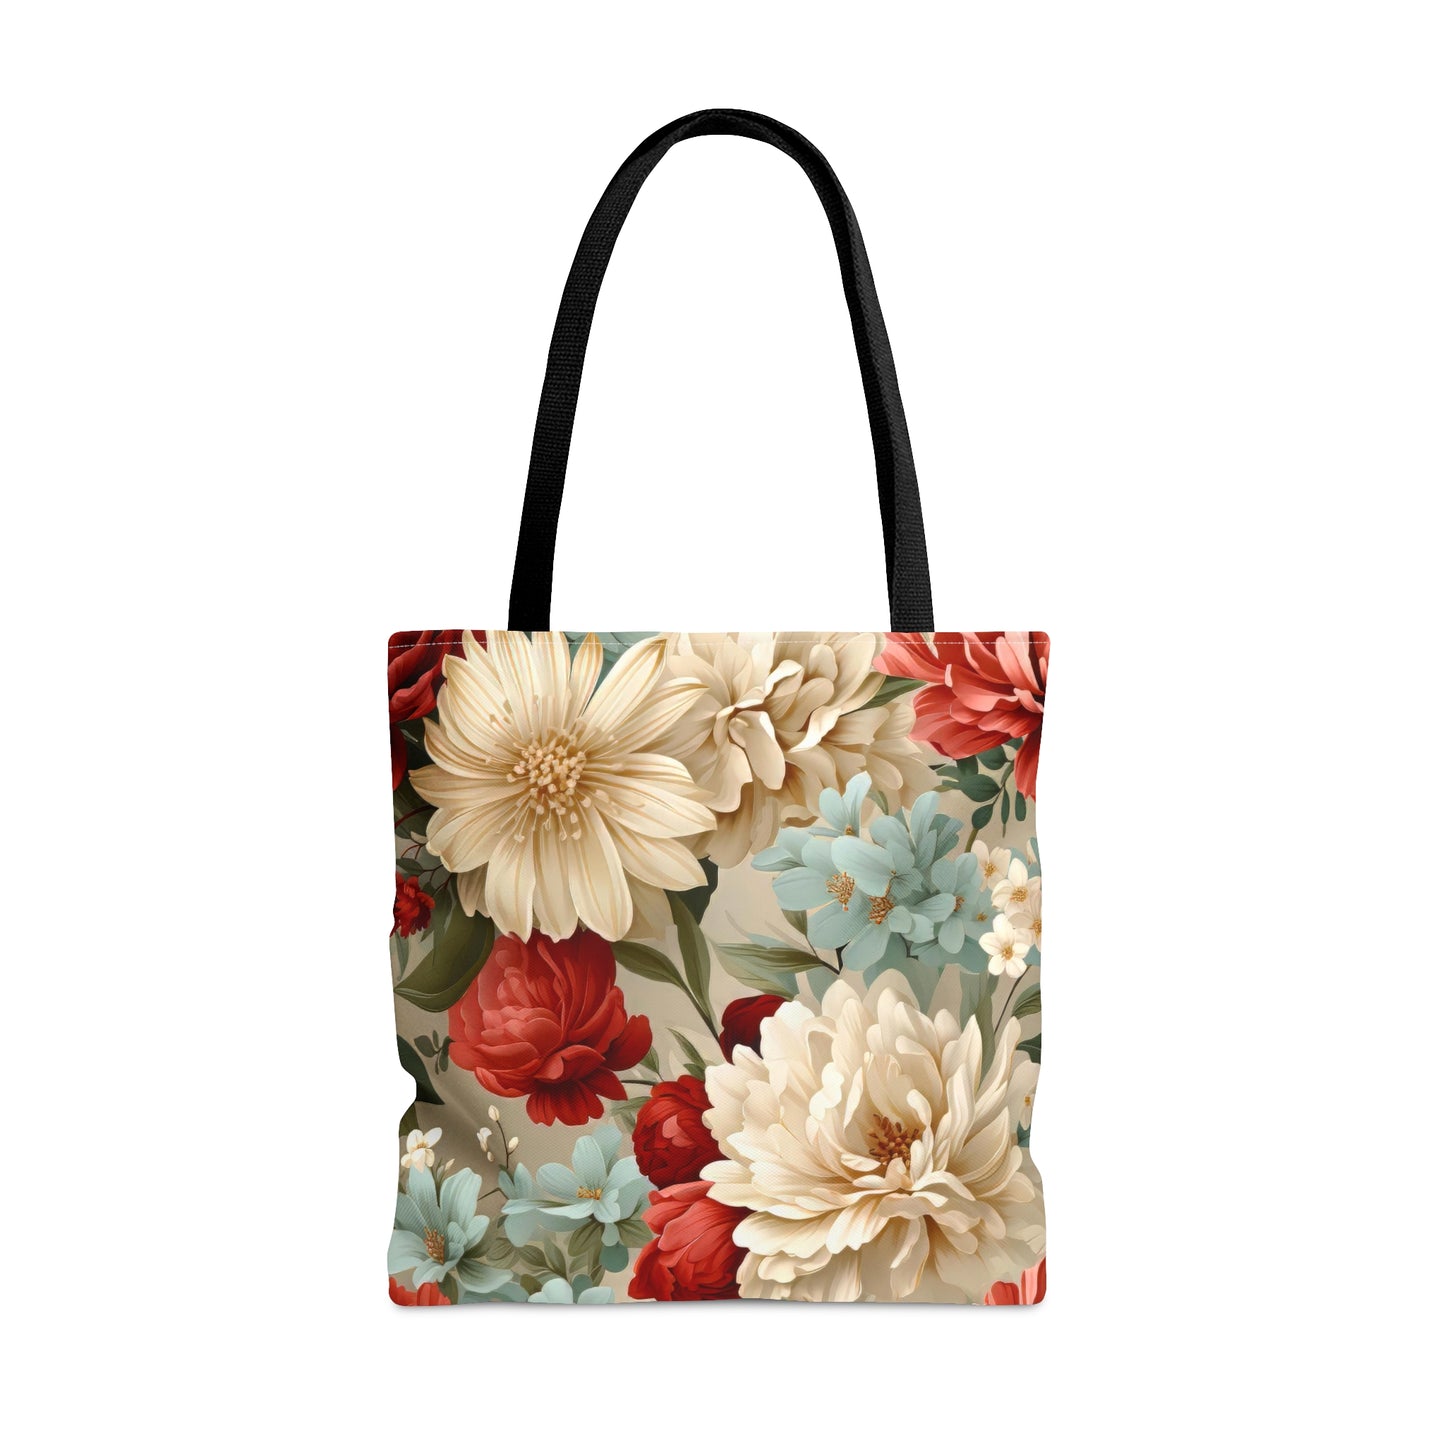 Exotic Floral Tote Bag